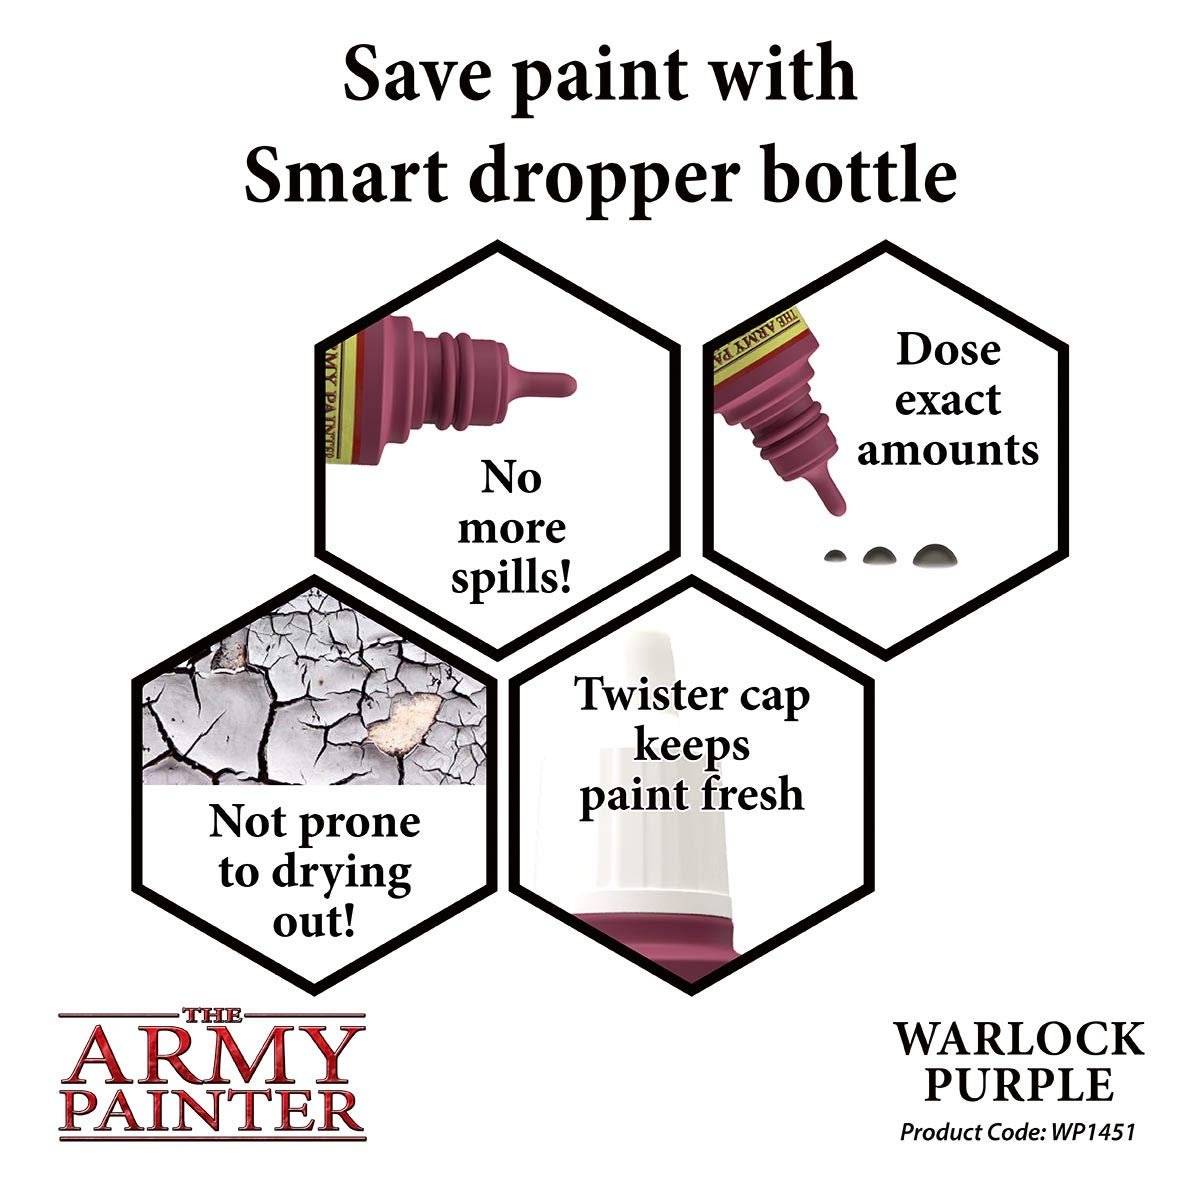 The Army Painter - Warpaints: Warlock Purple (18ml/0.6oz)